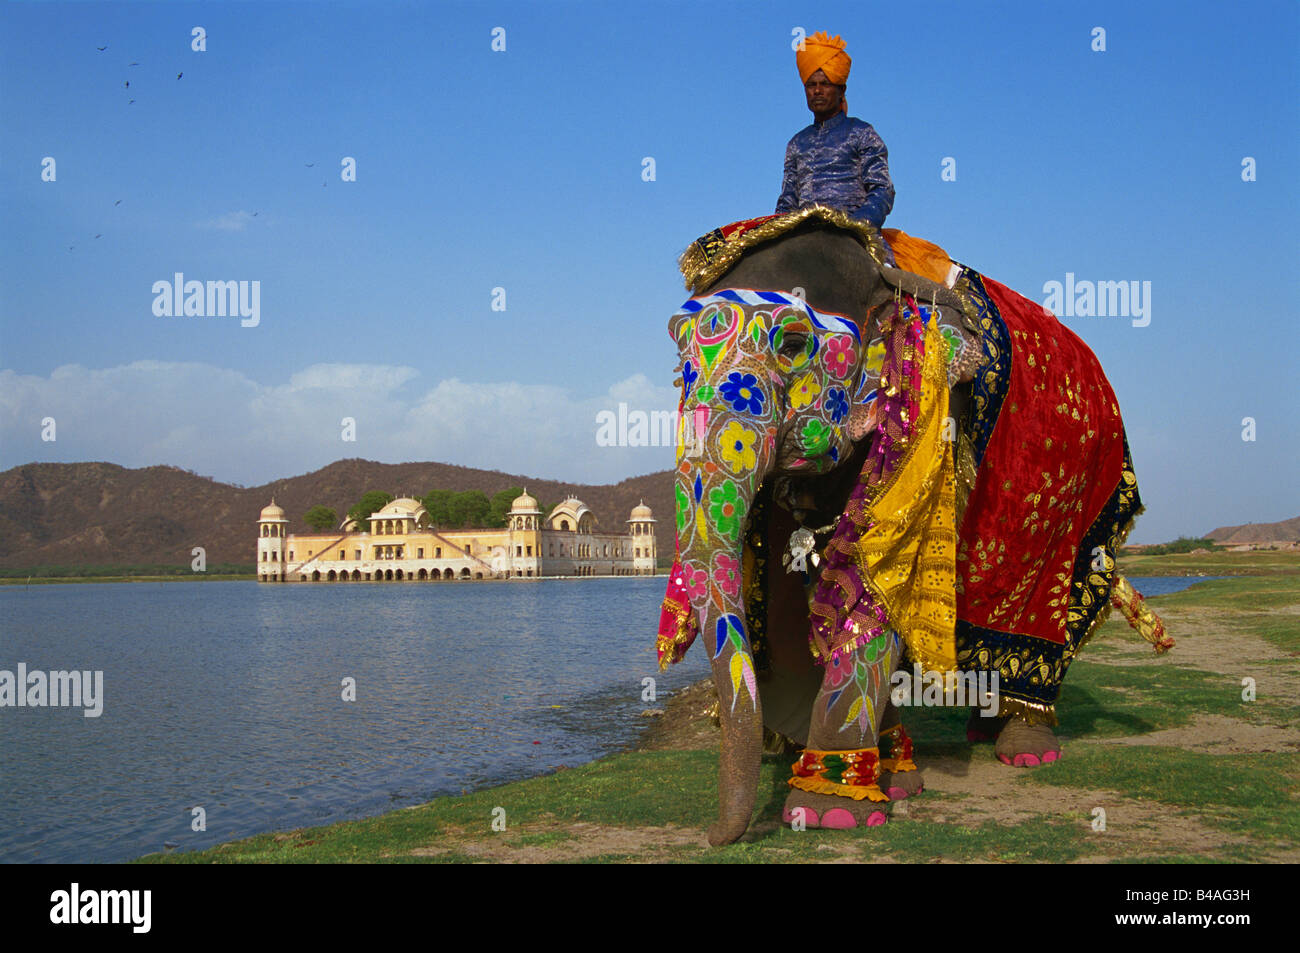 India, Jaipur, Jal Mahal Lake Palace, Elephant Parade Stock Photo